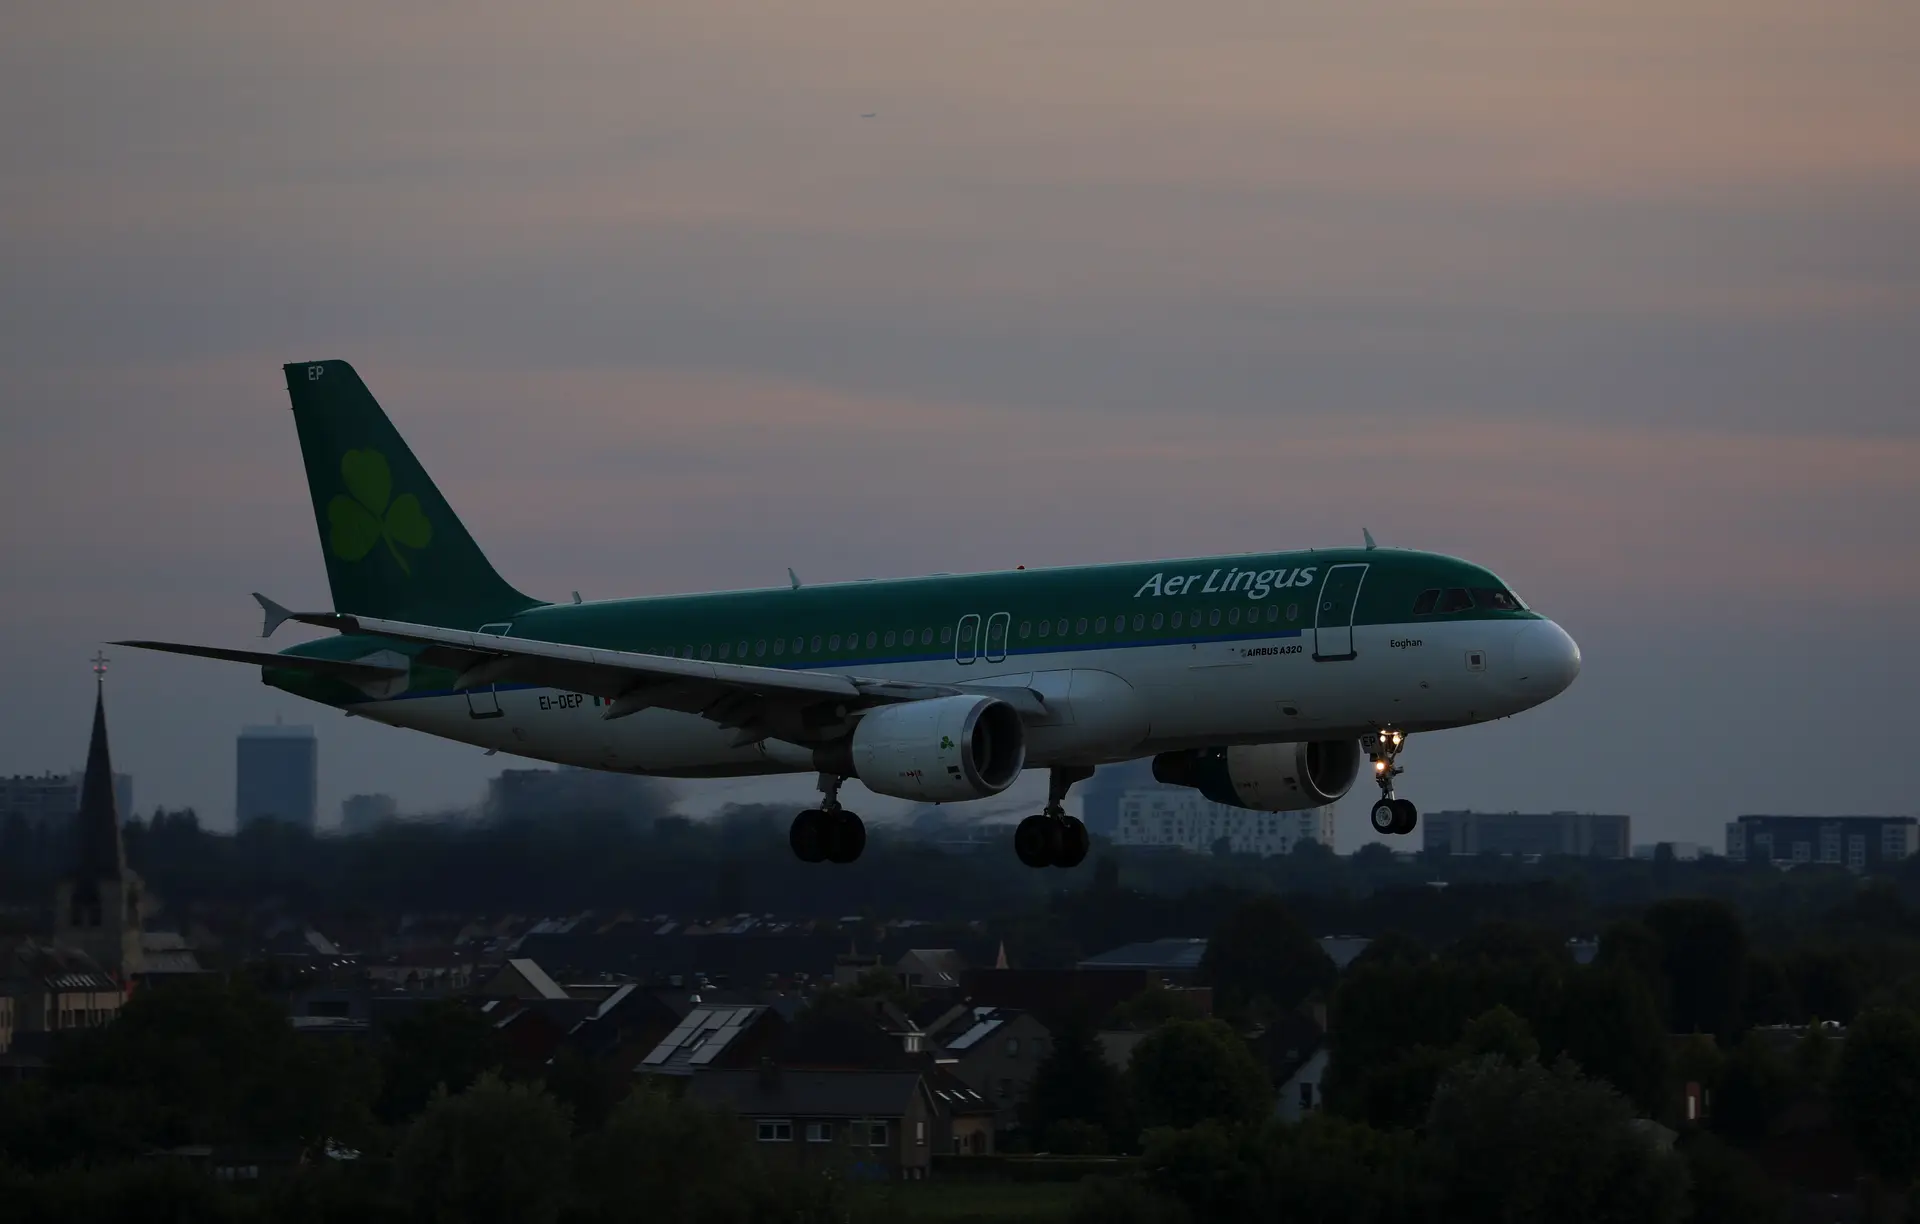 Companhia Aer Lingus com voos cancelados após problema informático